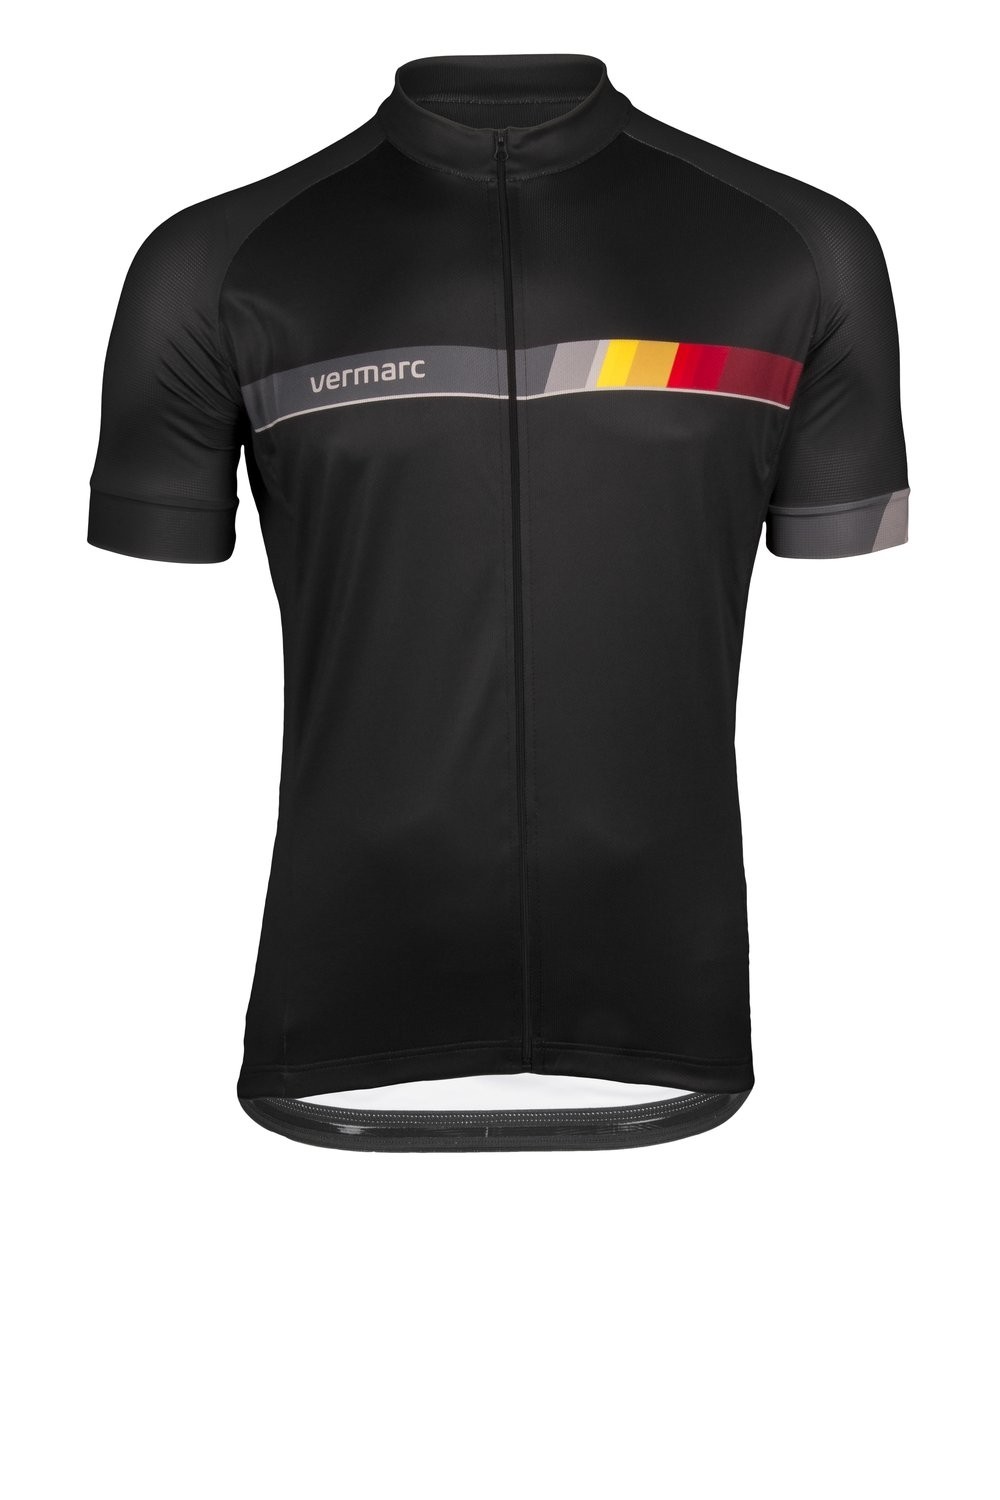 Vermarc belgica sp.l maillot de cyclisme manches courtes noir